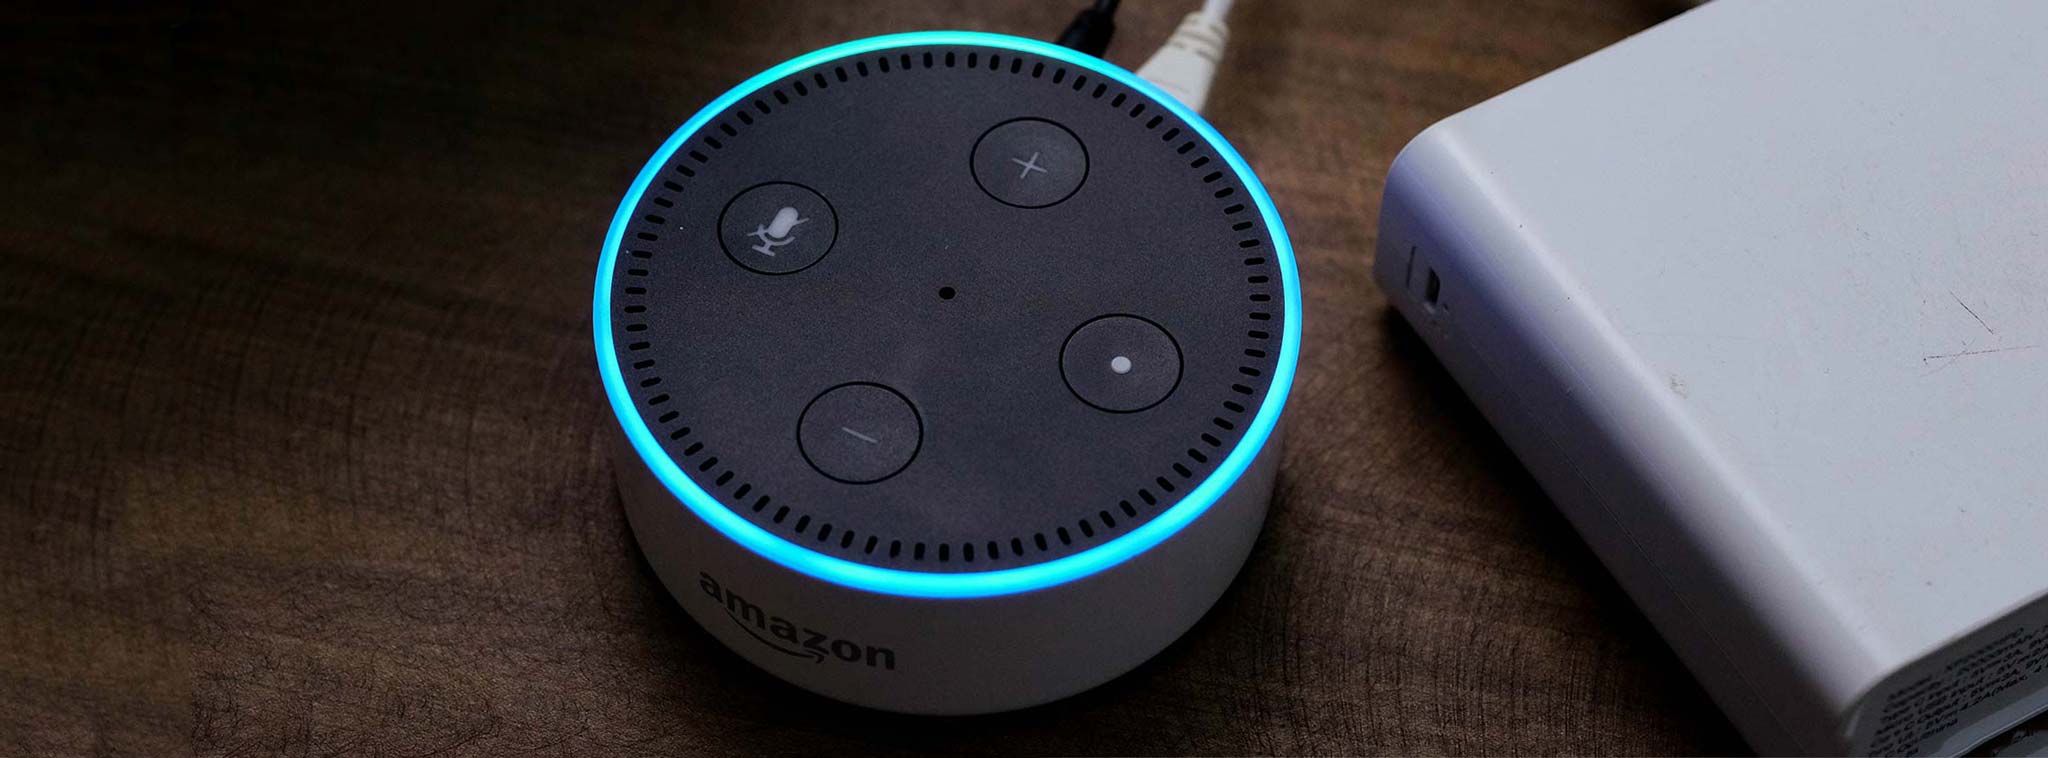 Amazon đang tự phát triển chip AI để cải thiện hiệu năng của các thiết bị Alexa